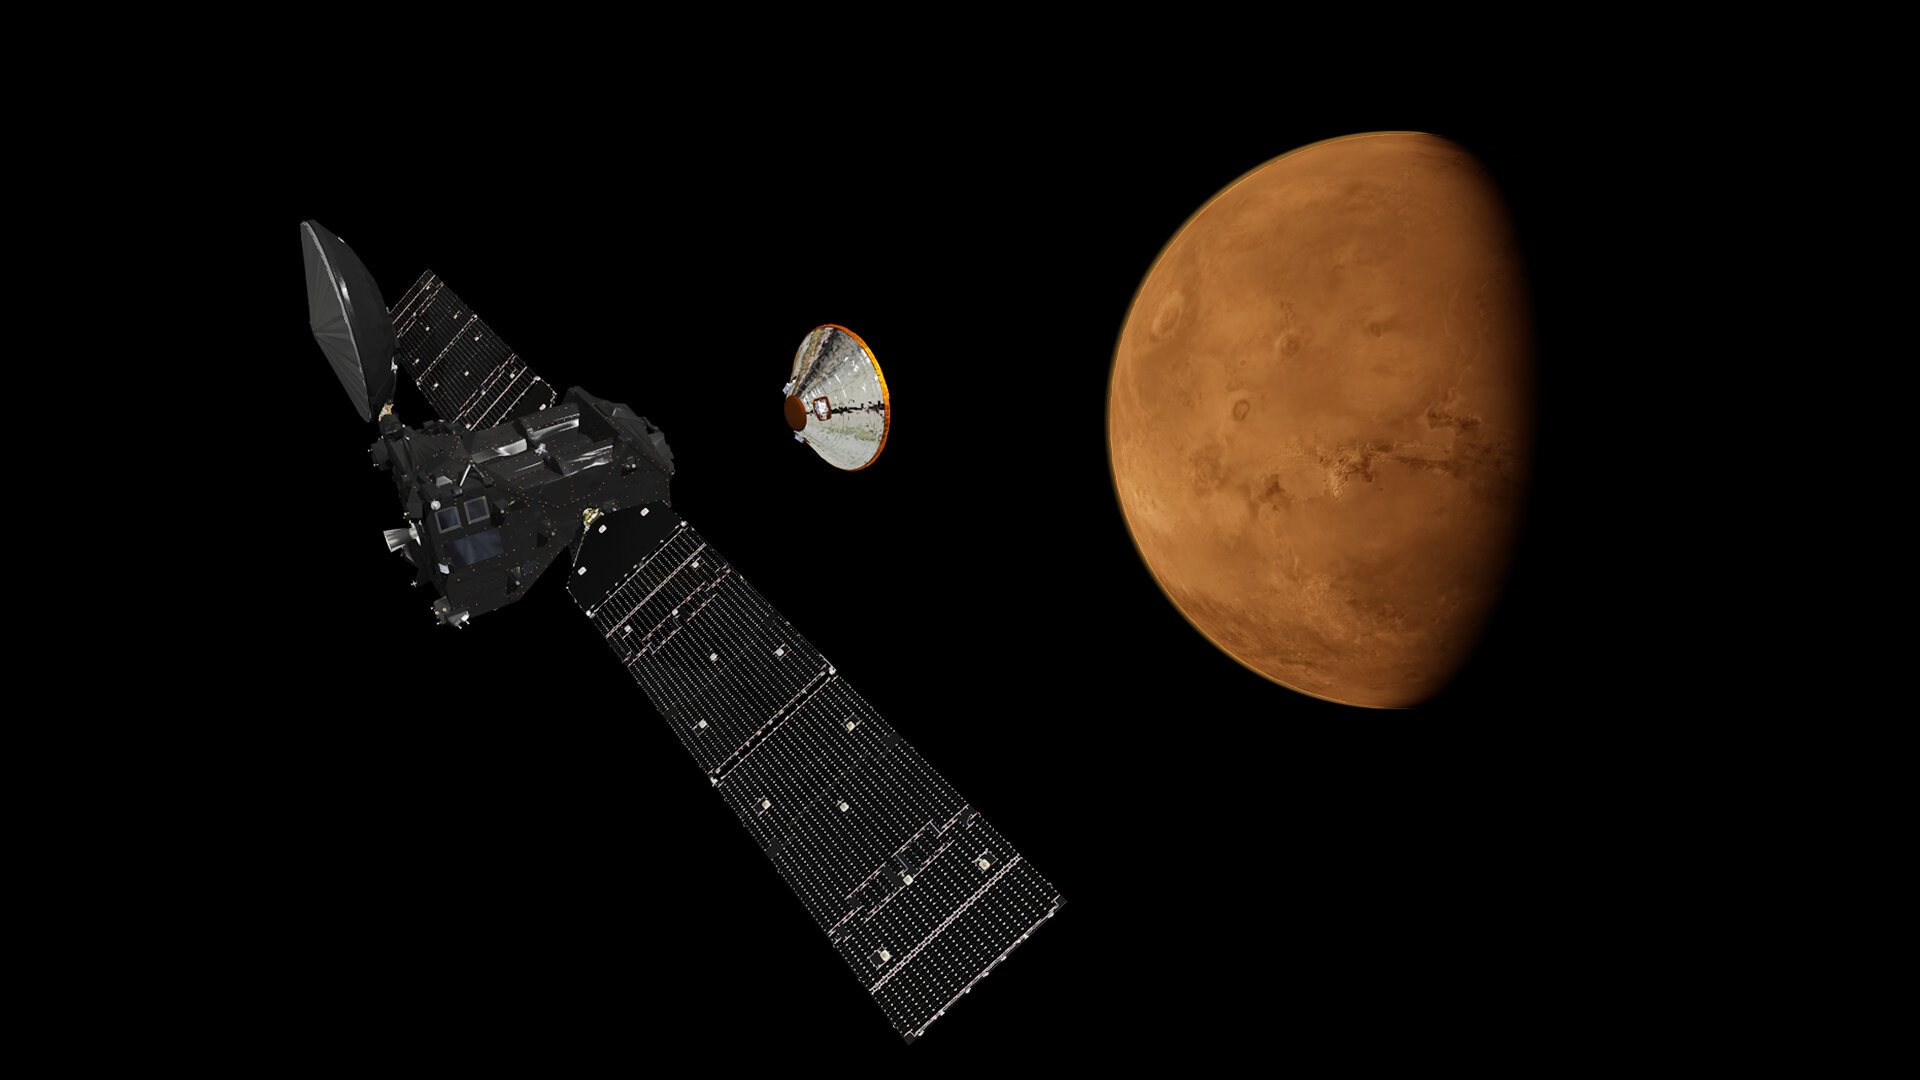 Drei Tage vor der Ankunft beim Mars: Von der Muttersonde Trace Gas Orbiter (TGO) trennt sich das Landemodul Schiaparelli und fliegt autonom zum Roten Planeten